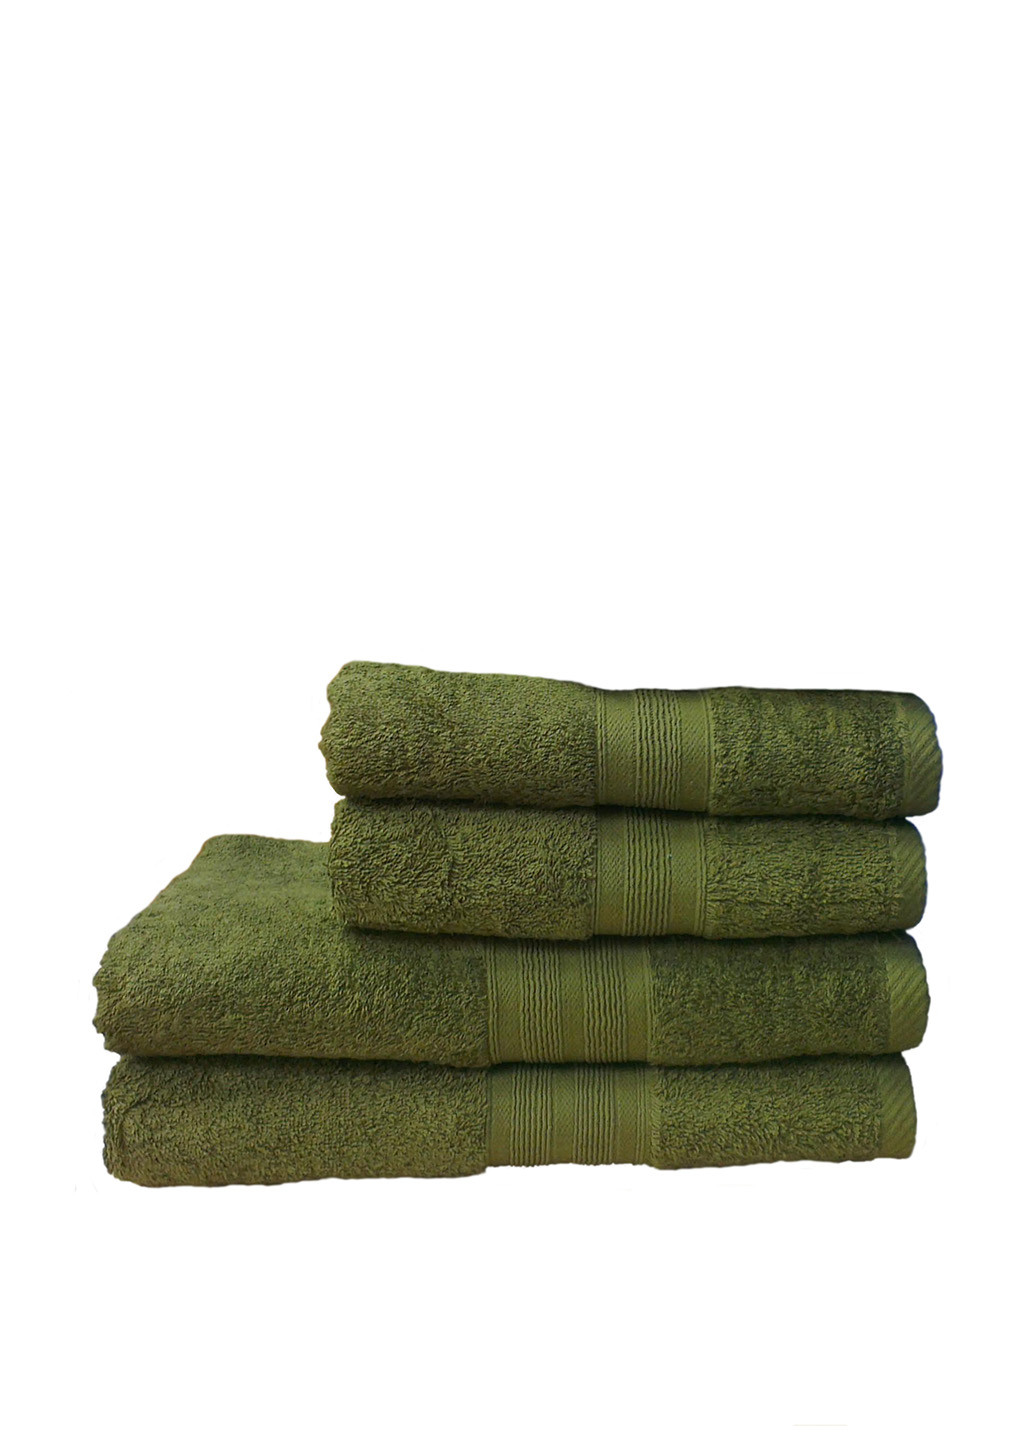 No Brand полотенце, 40х80 см однотонный оливково-зеленый производство - Пакистан